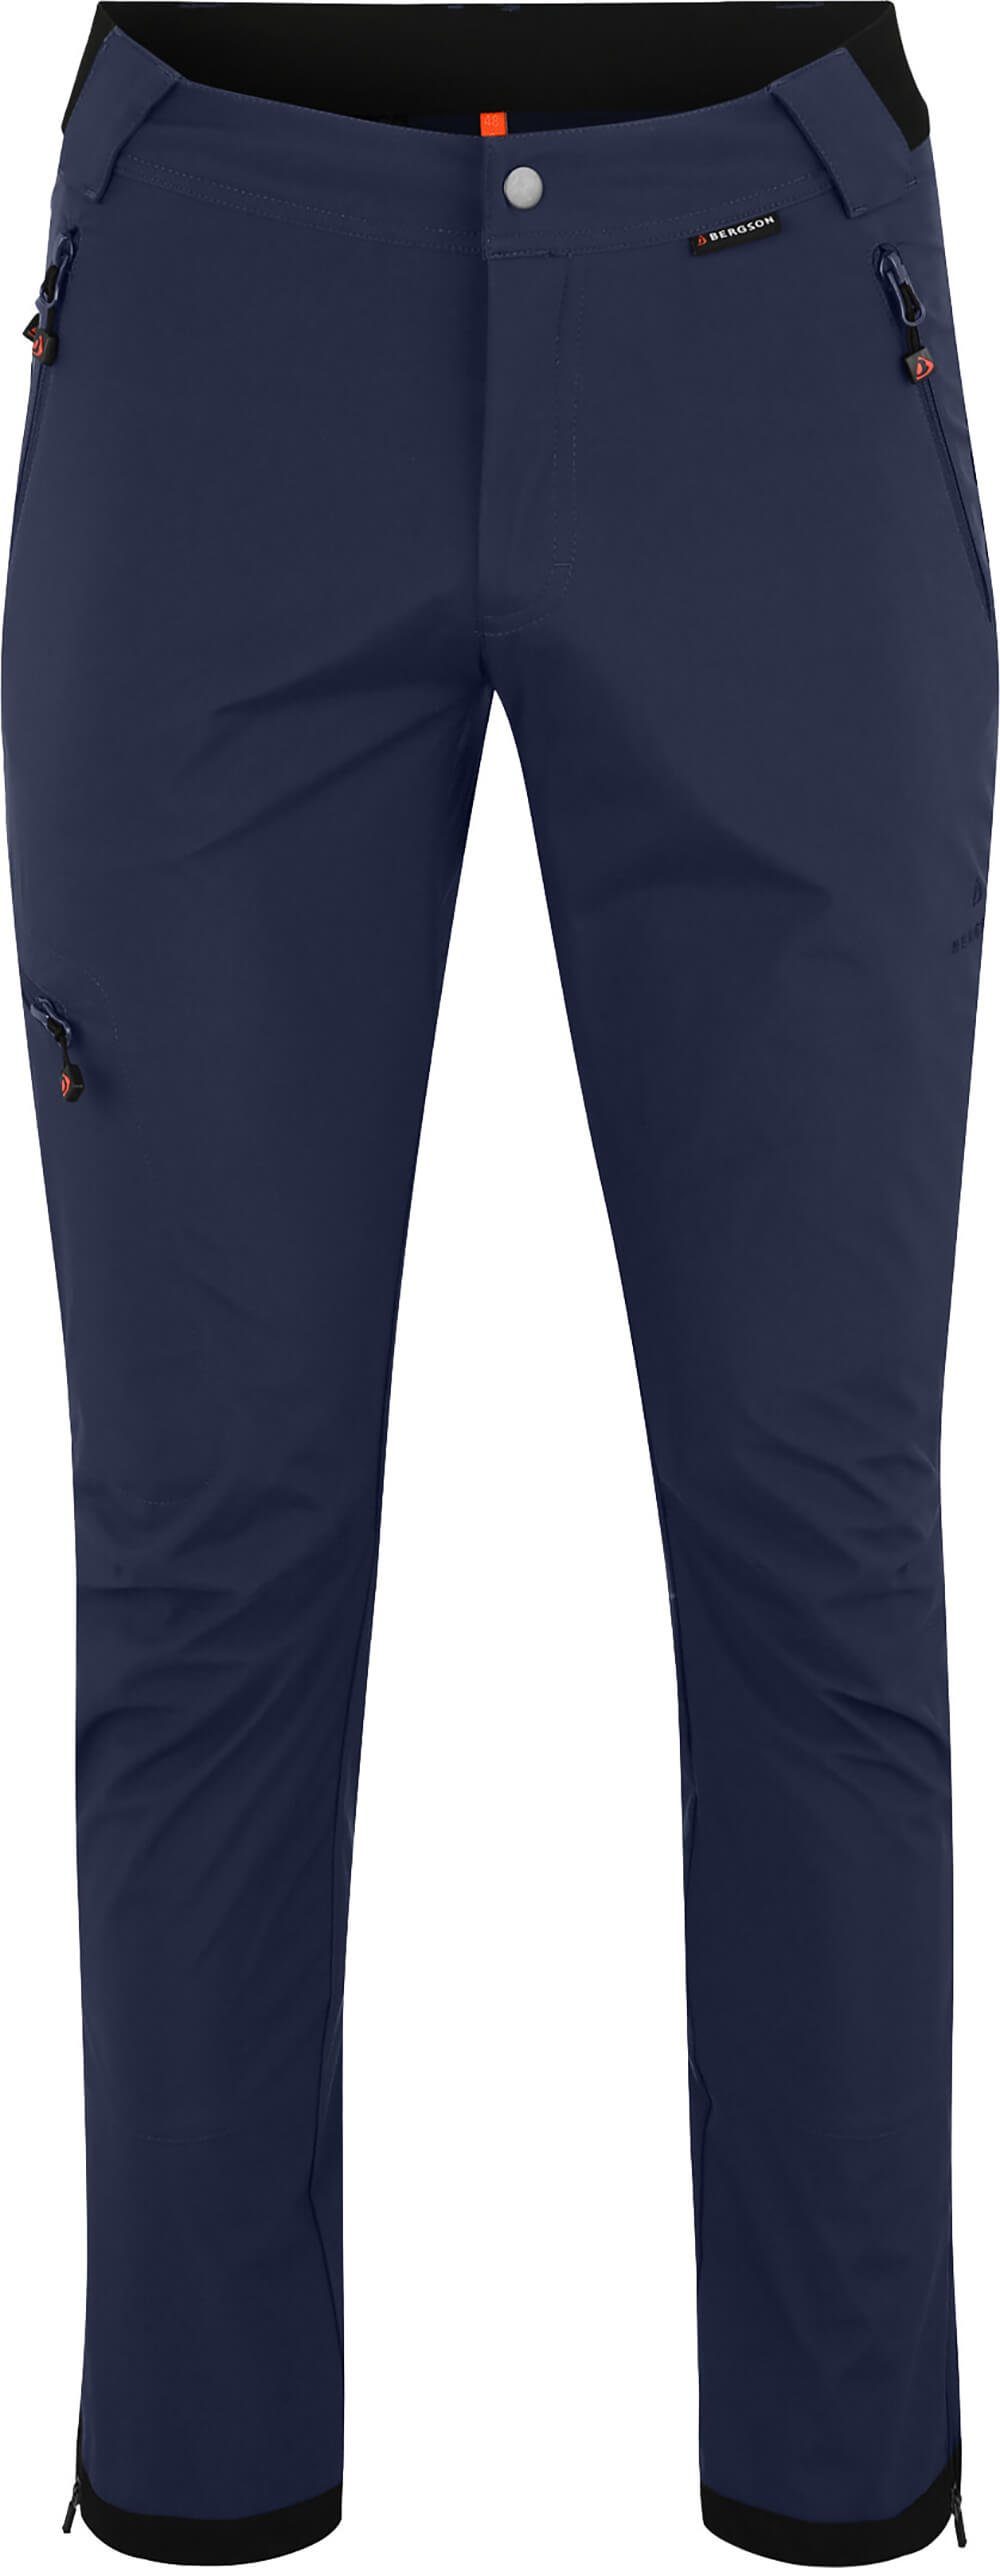 Bergson Outdoorhose KALLE COMFORT (slim) Herren Softshellhose, winddicht, strapazierfähig, Kurzgrößen, peacoat blau